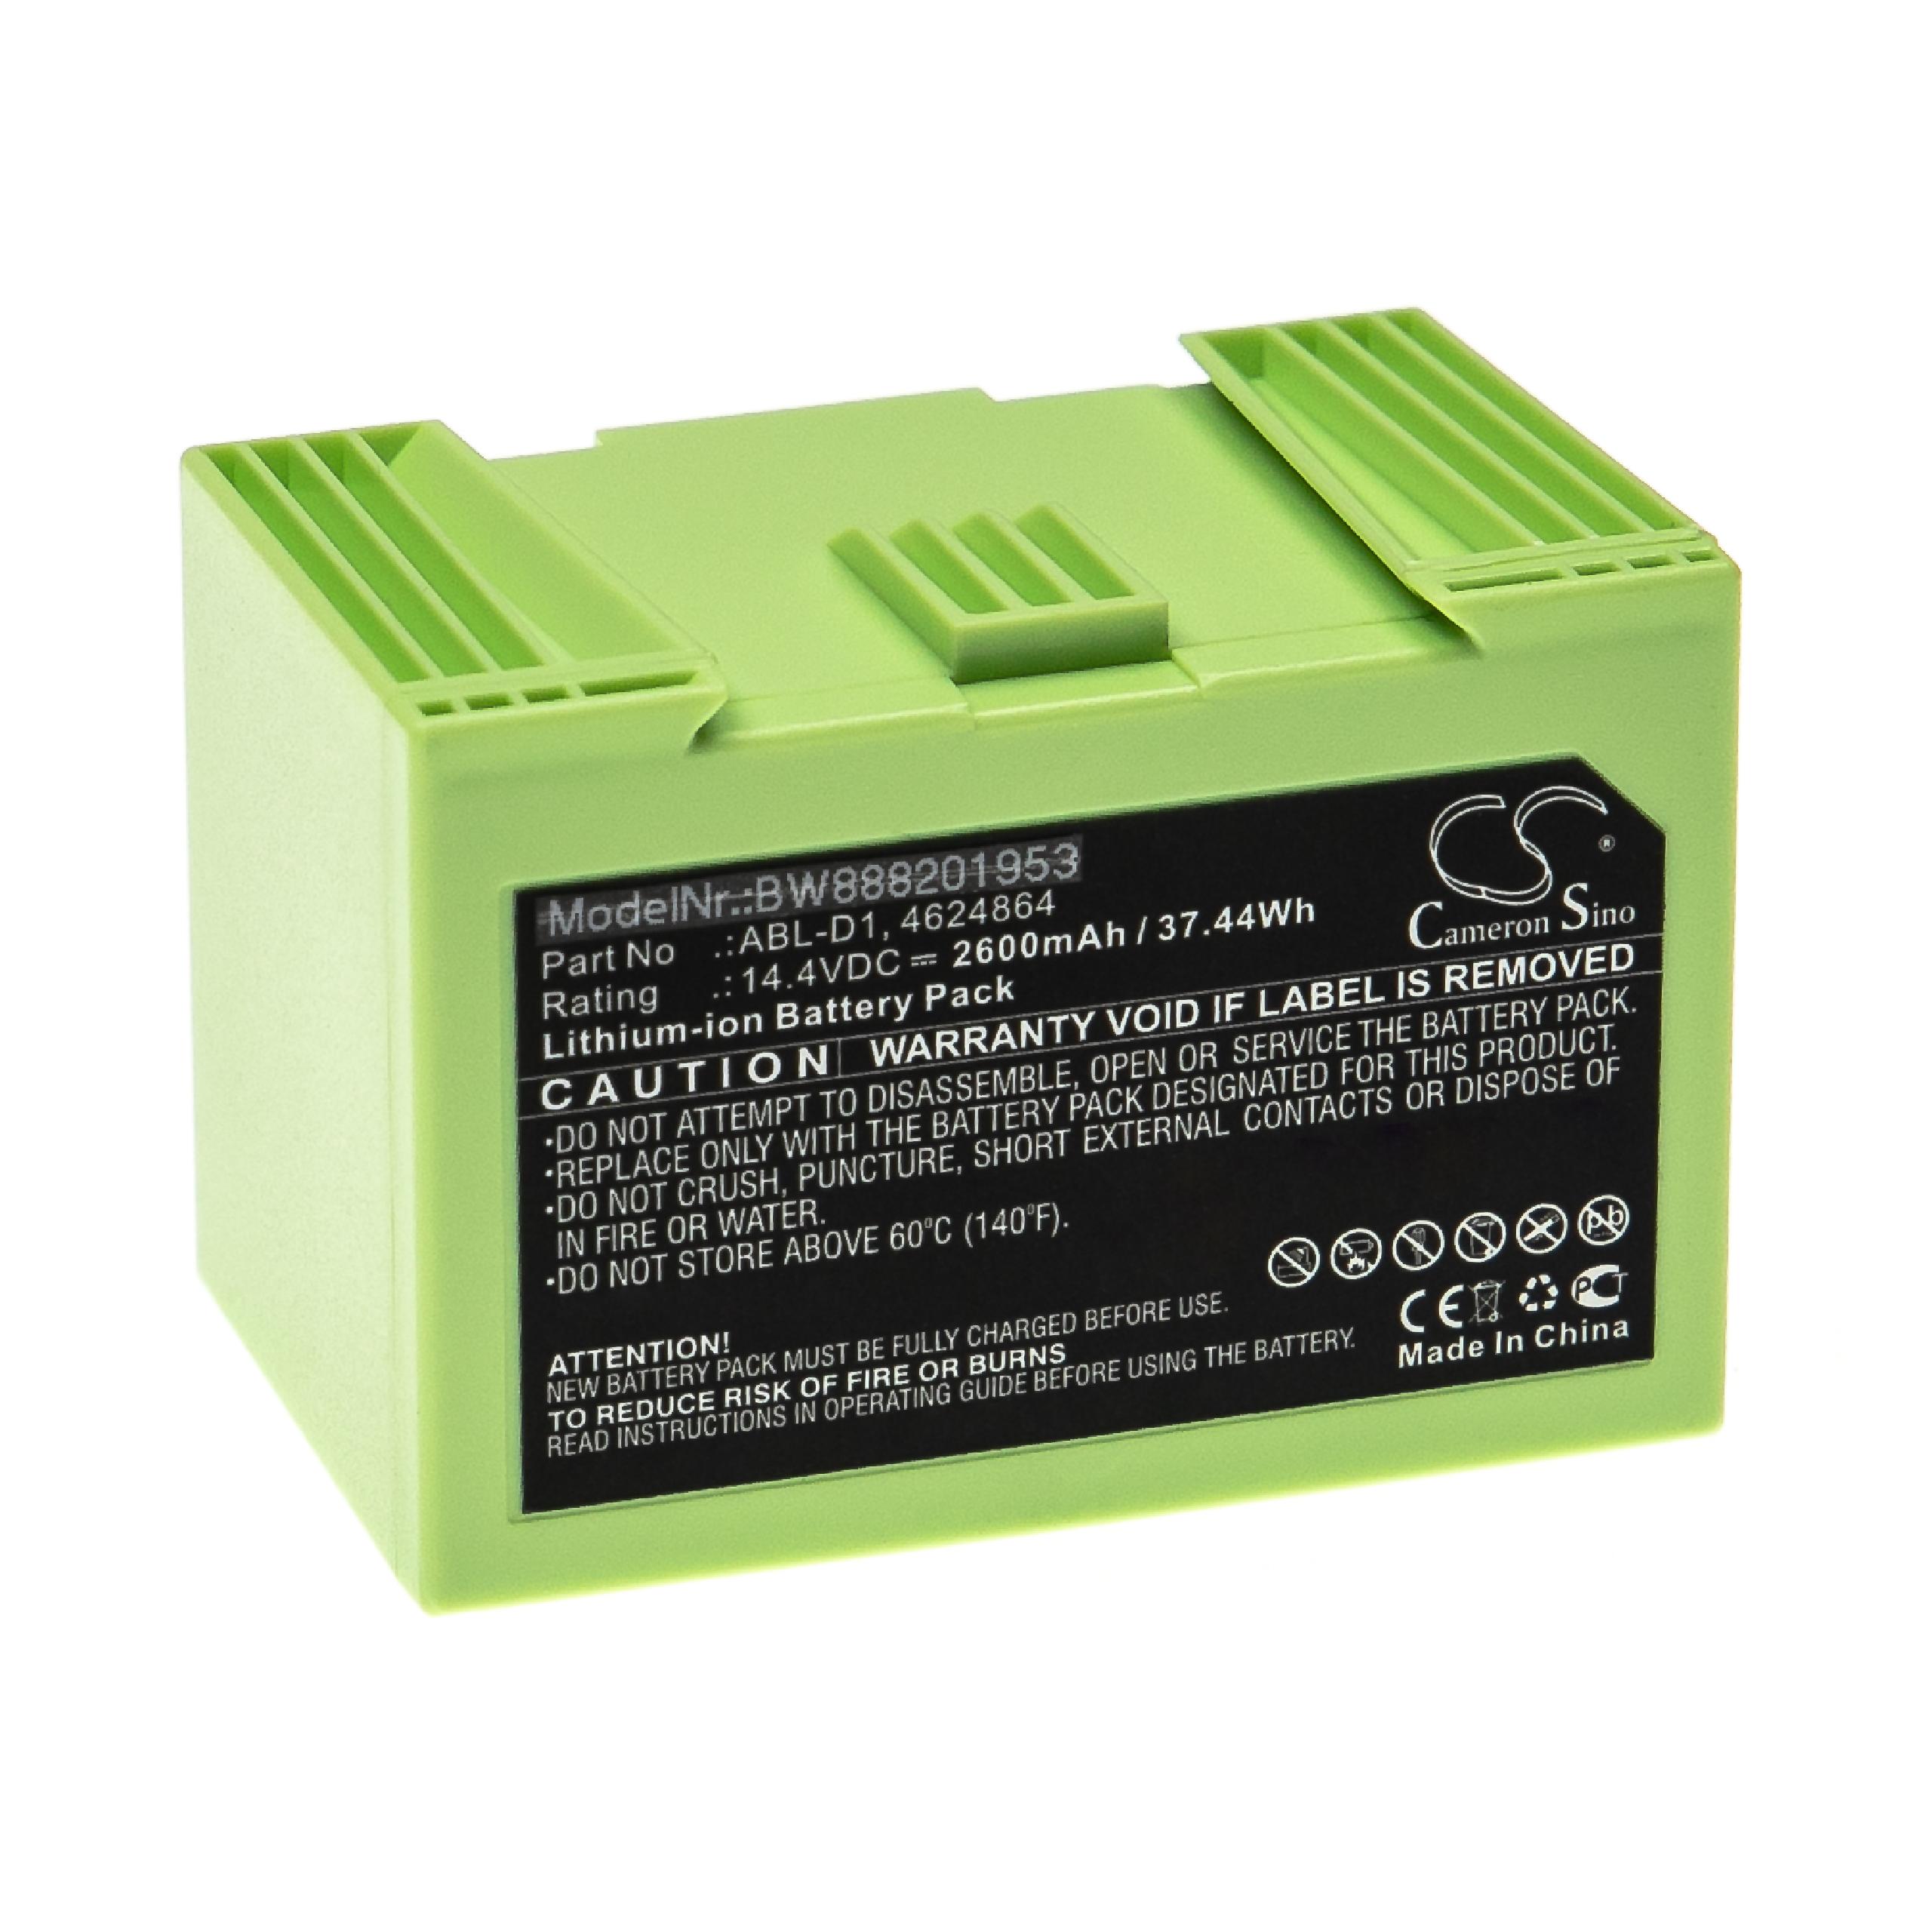 Batterie remplace iRobot ABL-D2, ABL-D1, 4624864 pour robot aspirateur - 2600mAh 14,4V Li-ion